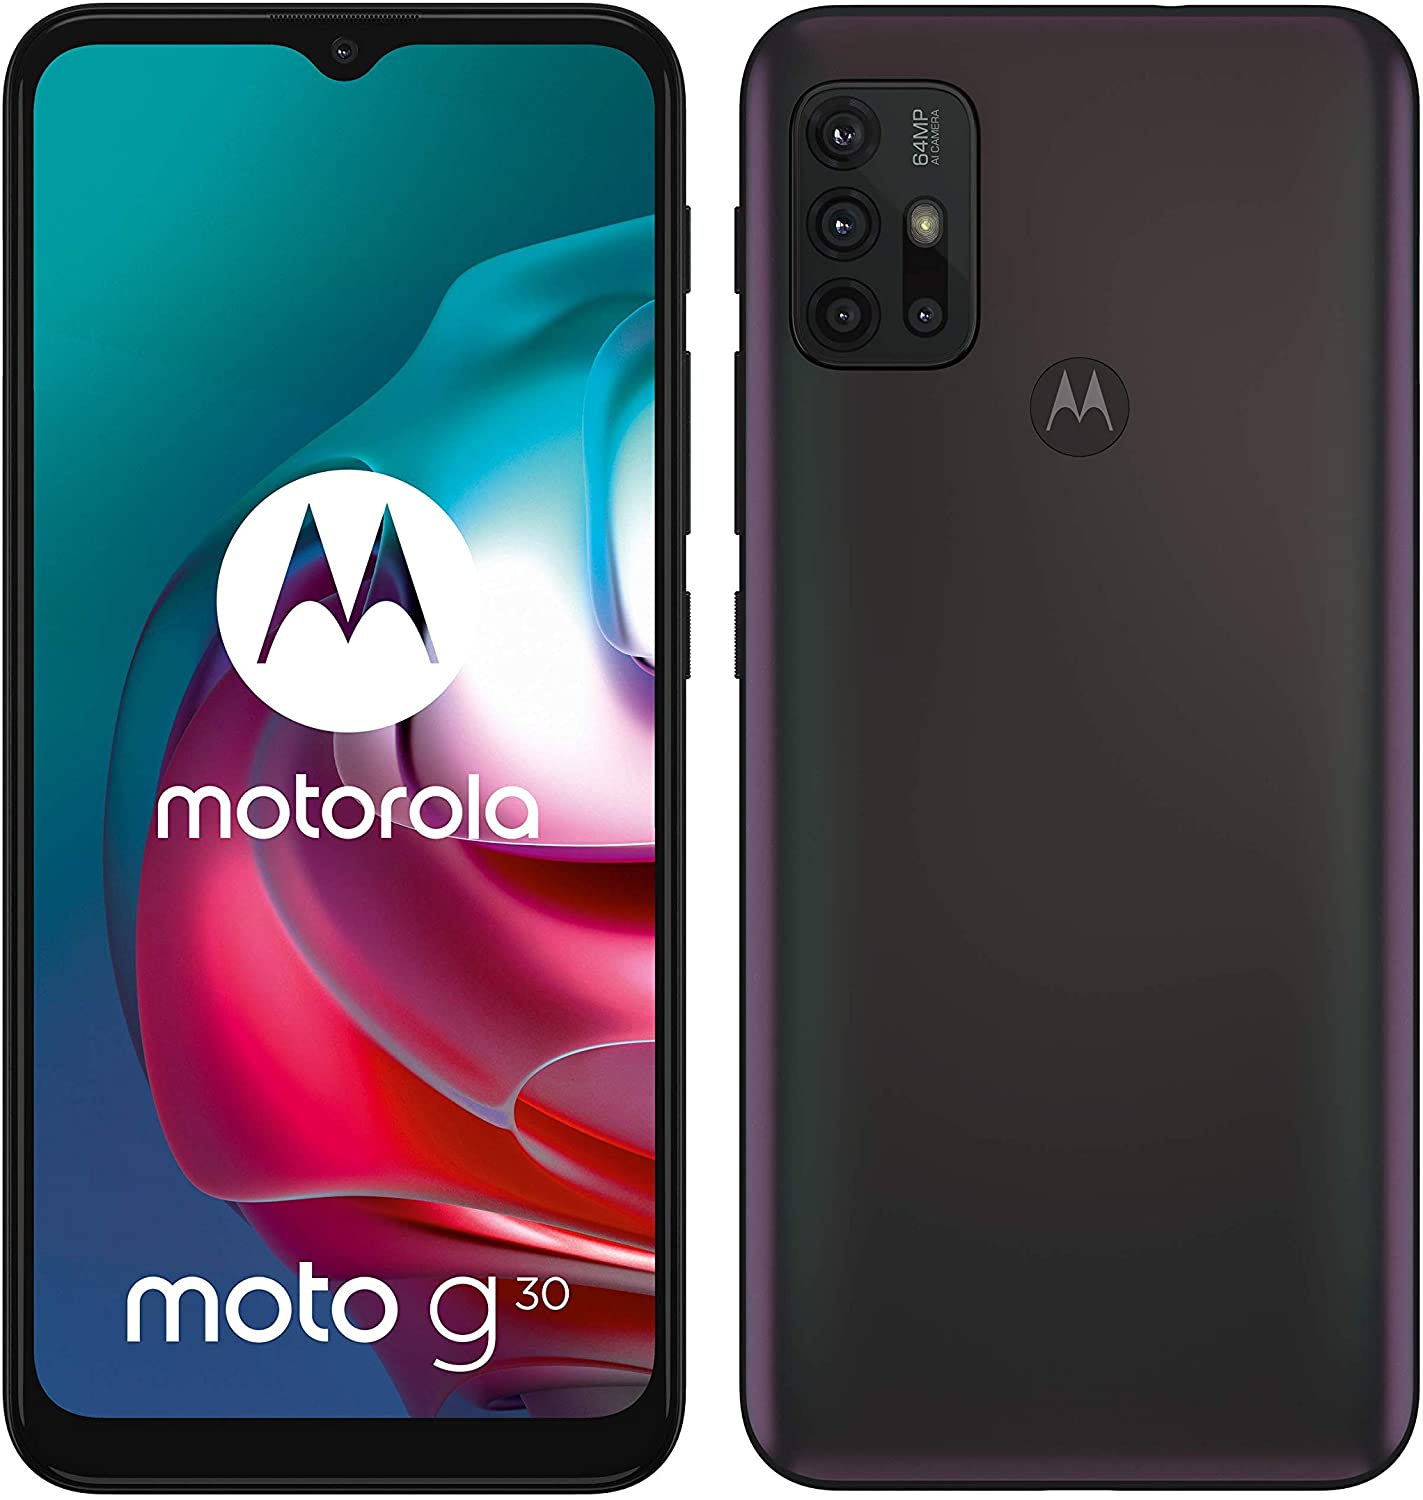 la fotocamera non funziona Motorola Moto G30